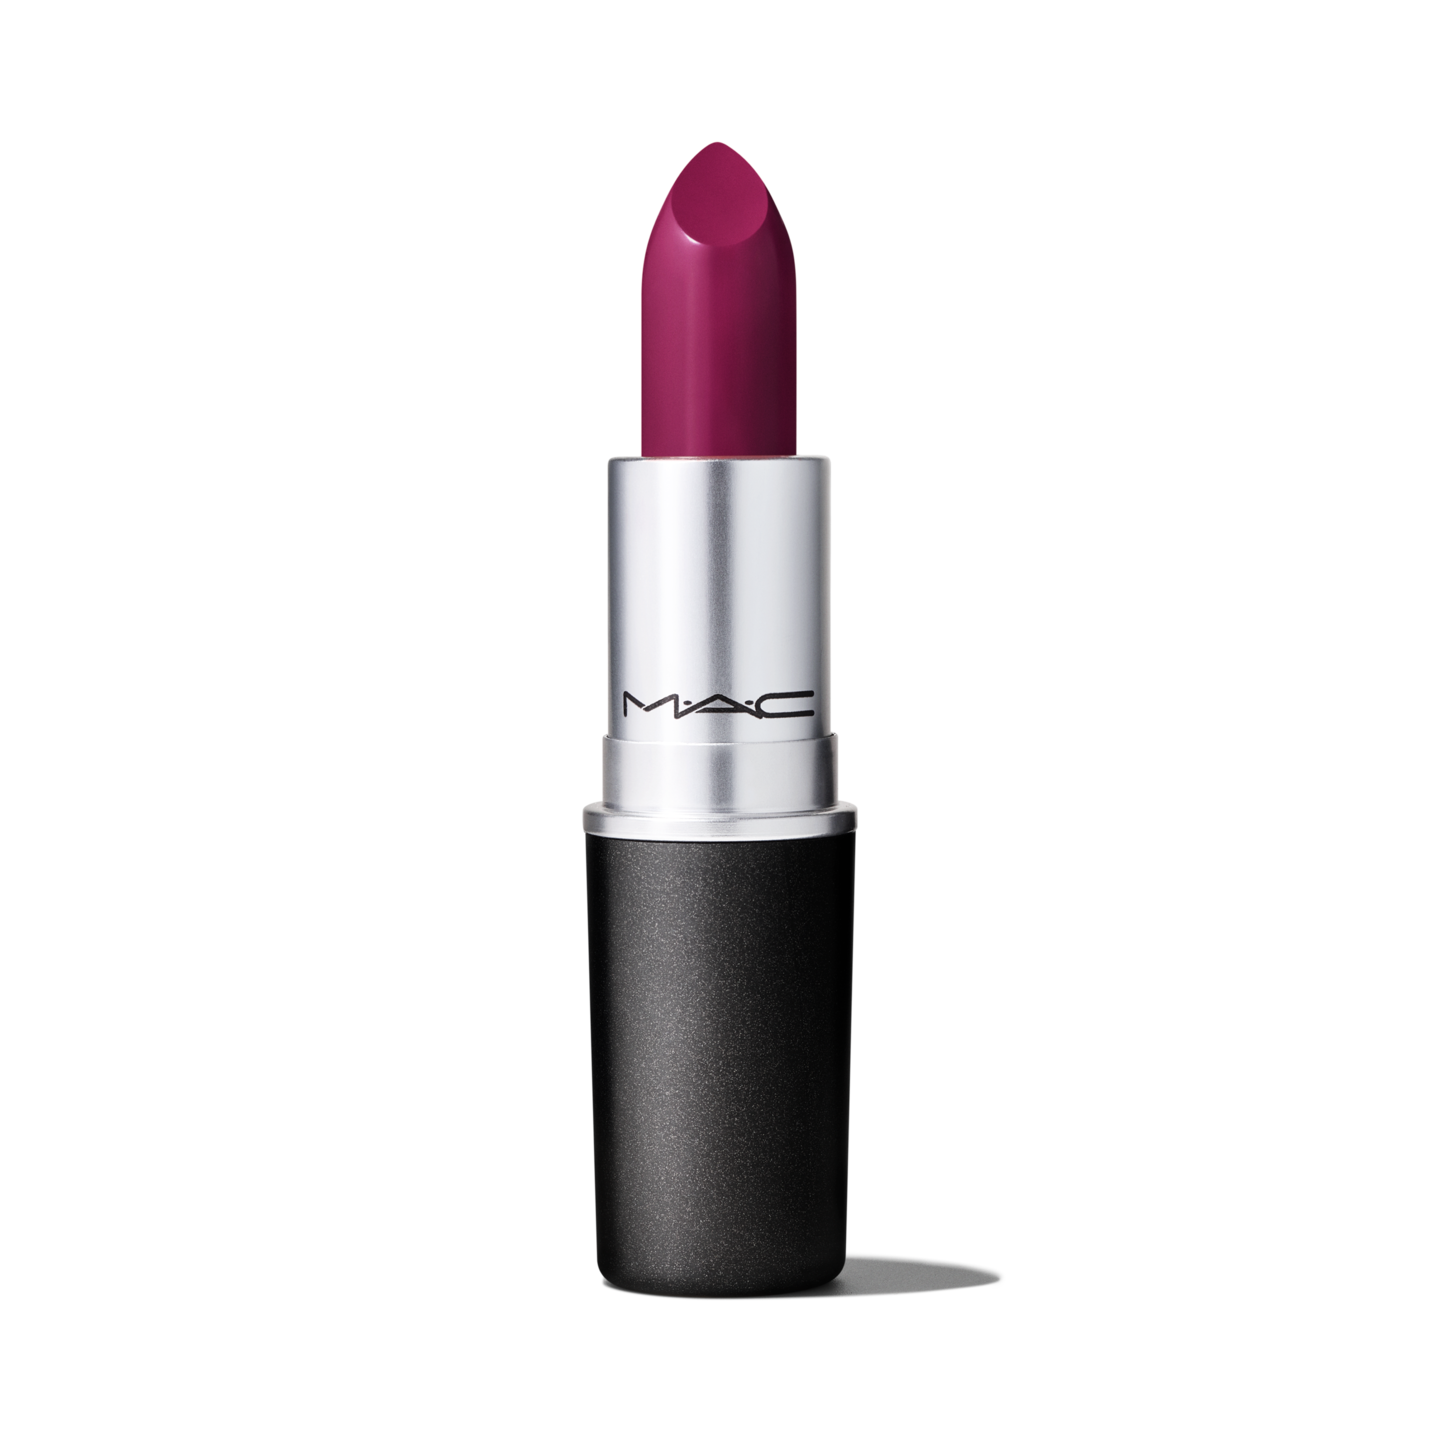 Bosom Friend vs Honeylove vs Brave  Mac lipstick shades, Lipstick makeup,  Prettiest lipstick